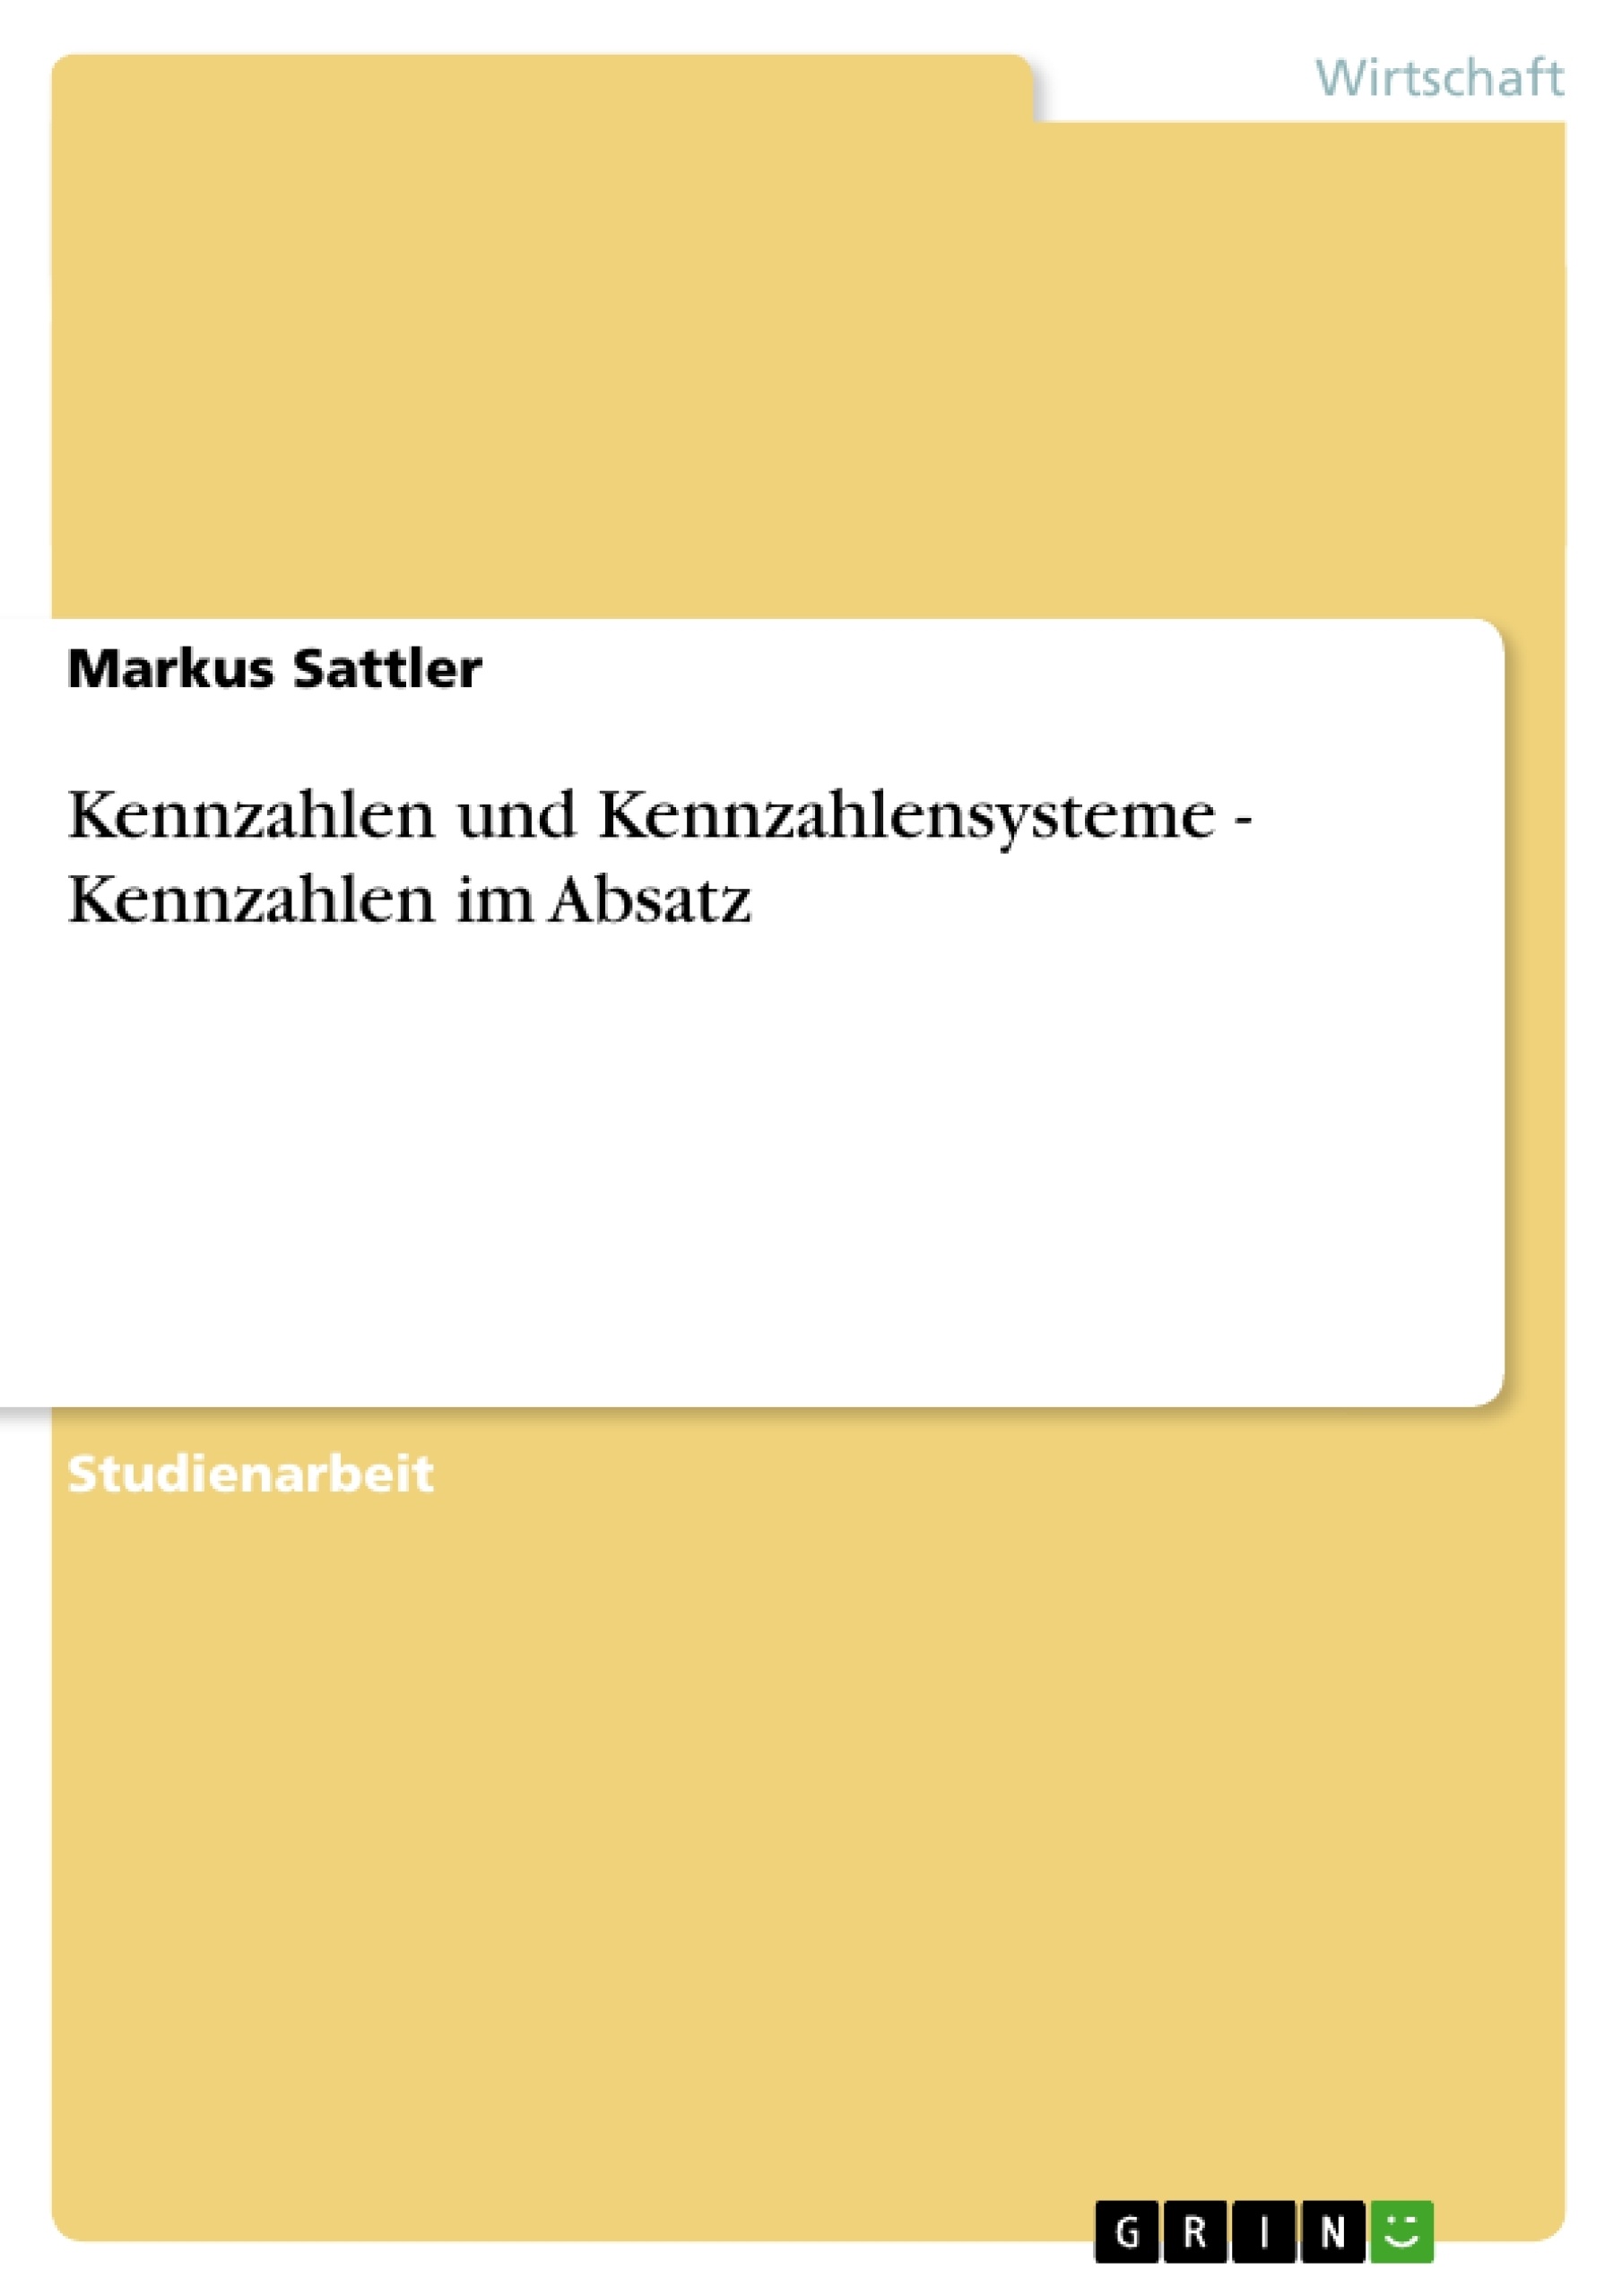 Titre: Kennzahlen und Kennzahlensysteme - Kennzahlen im Absatz